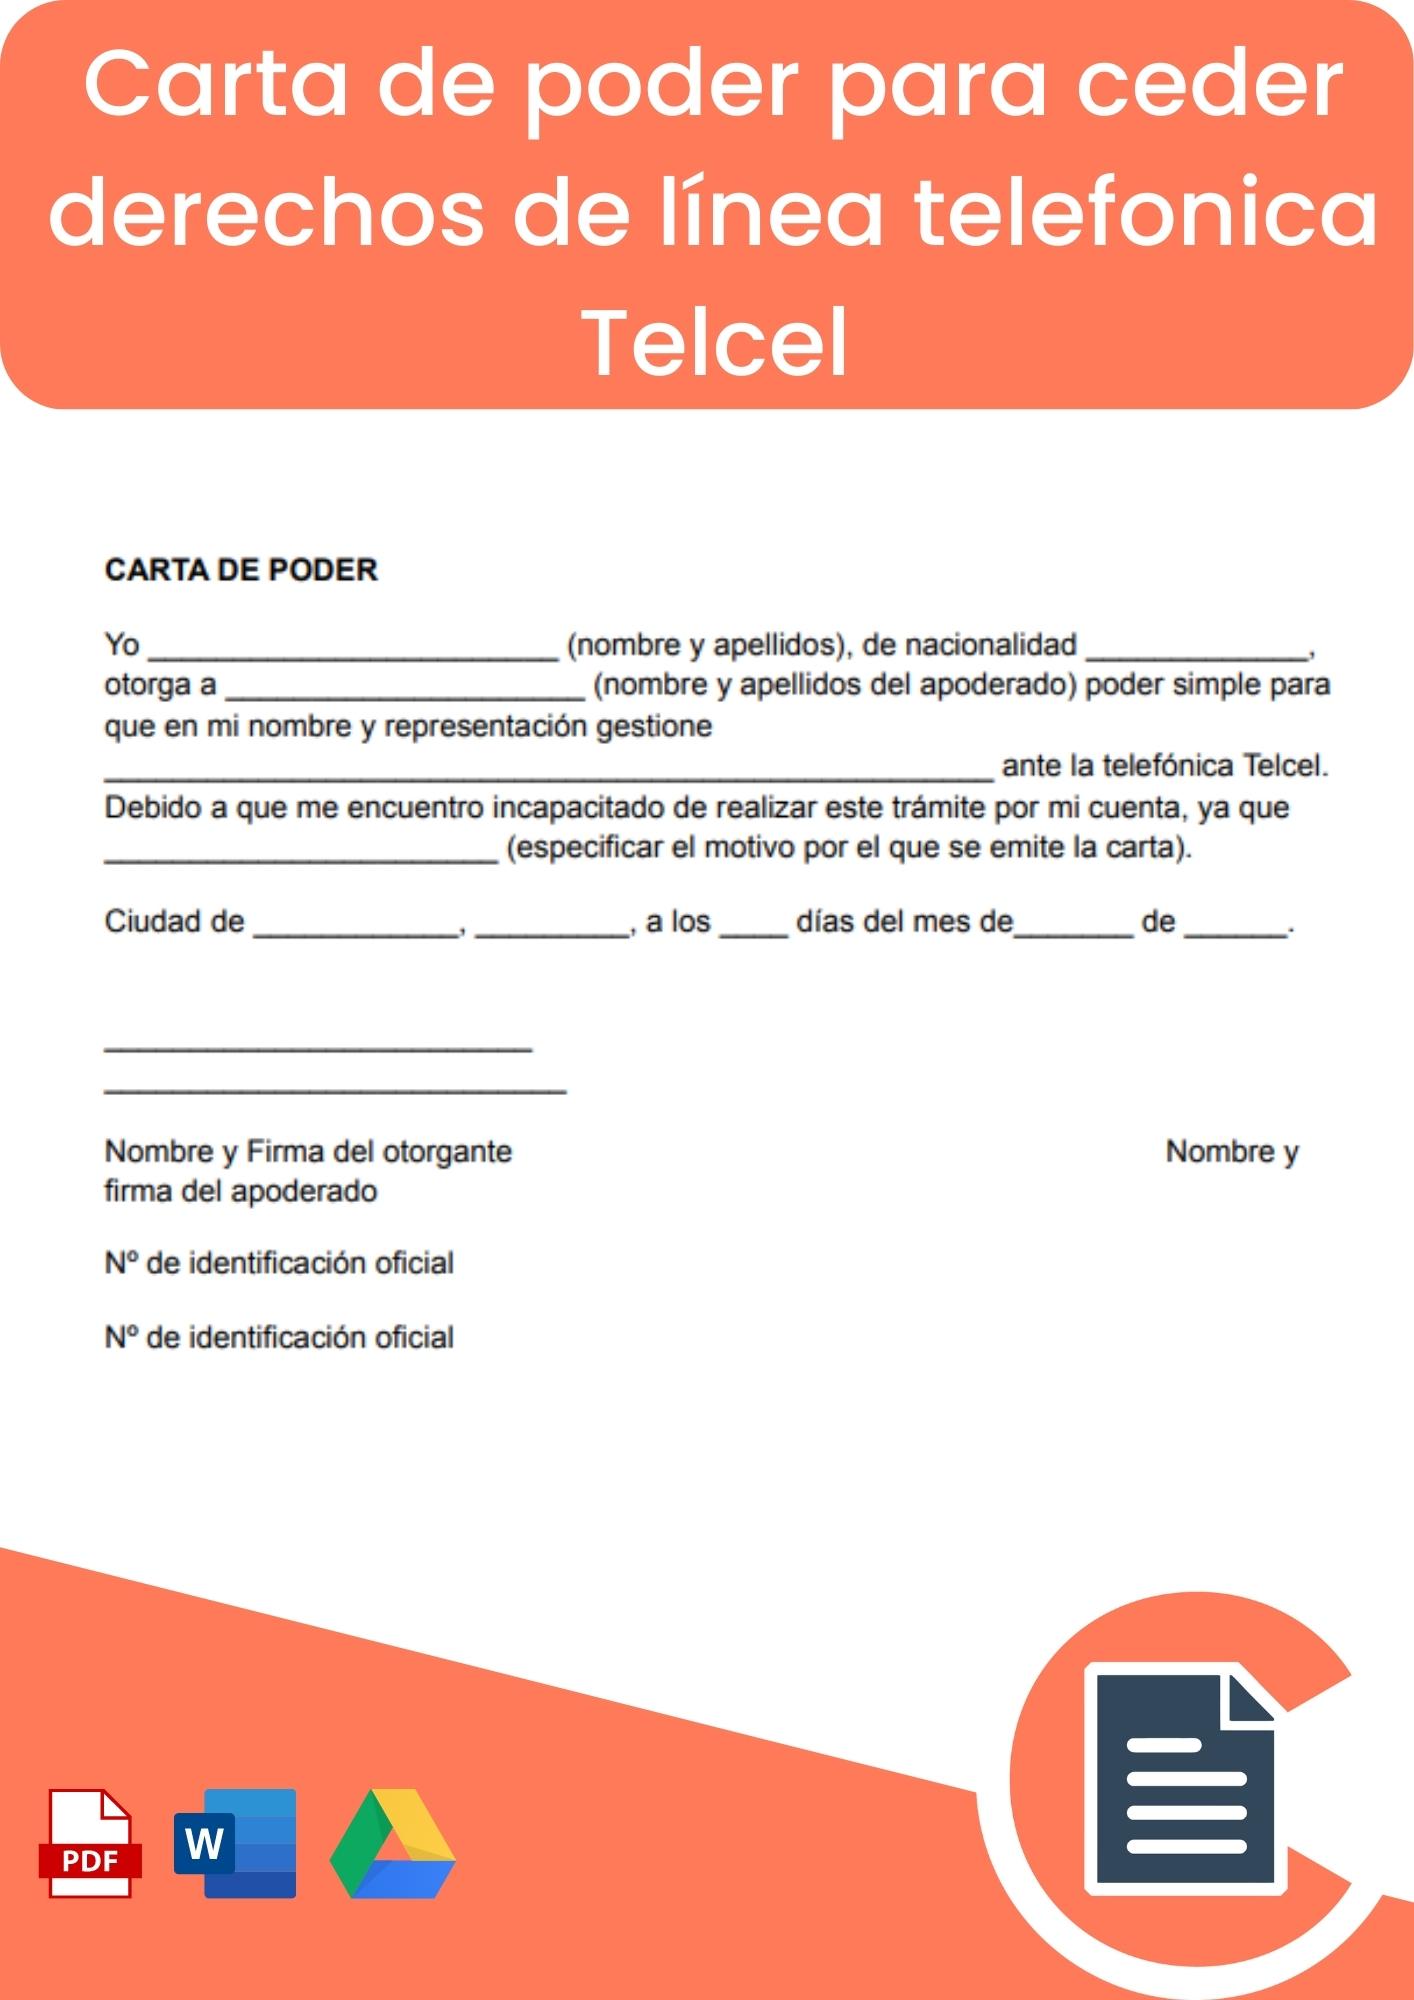 Carta de poder para ceder derechos de línea telefonica Telcel